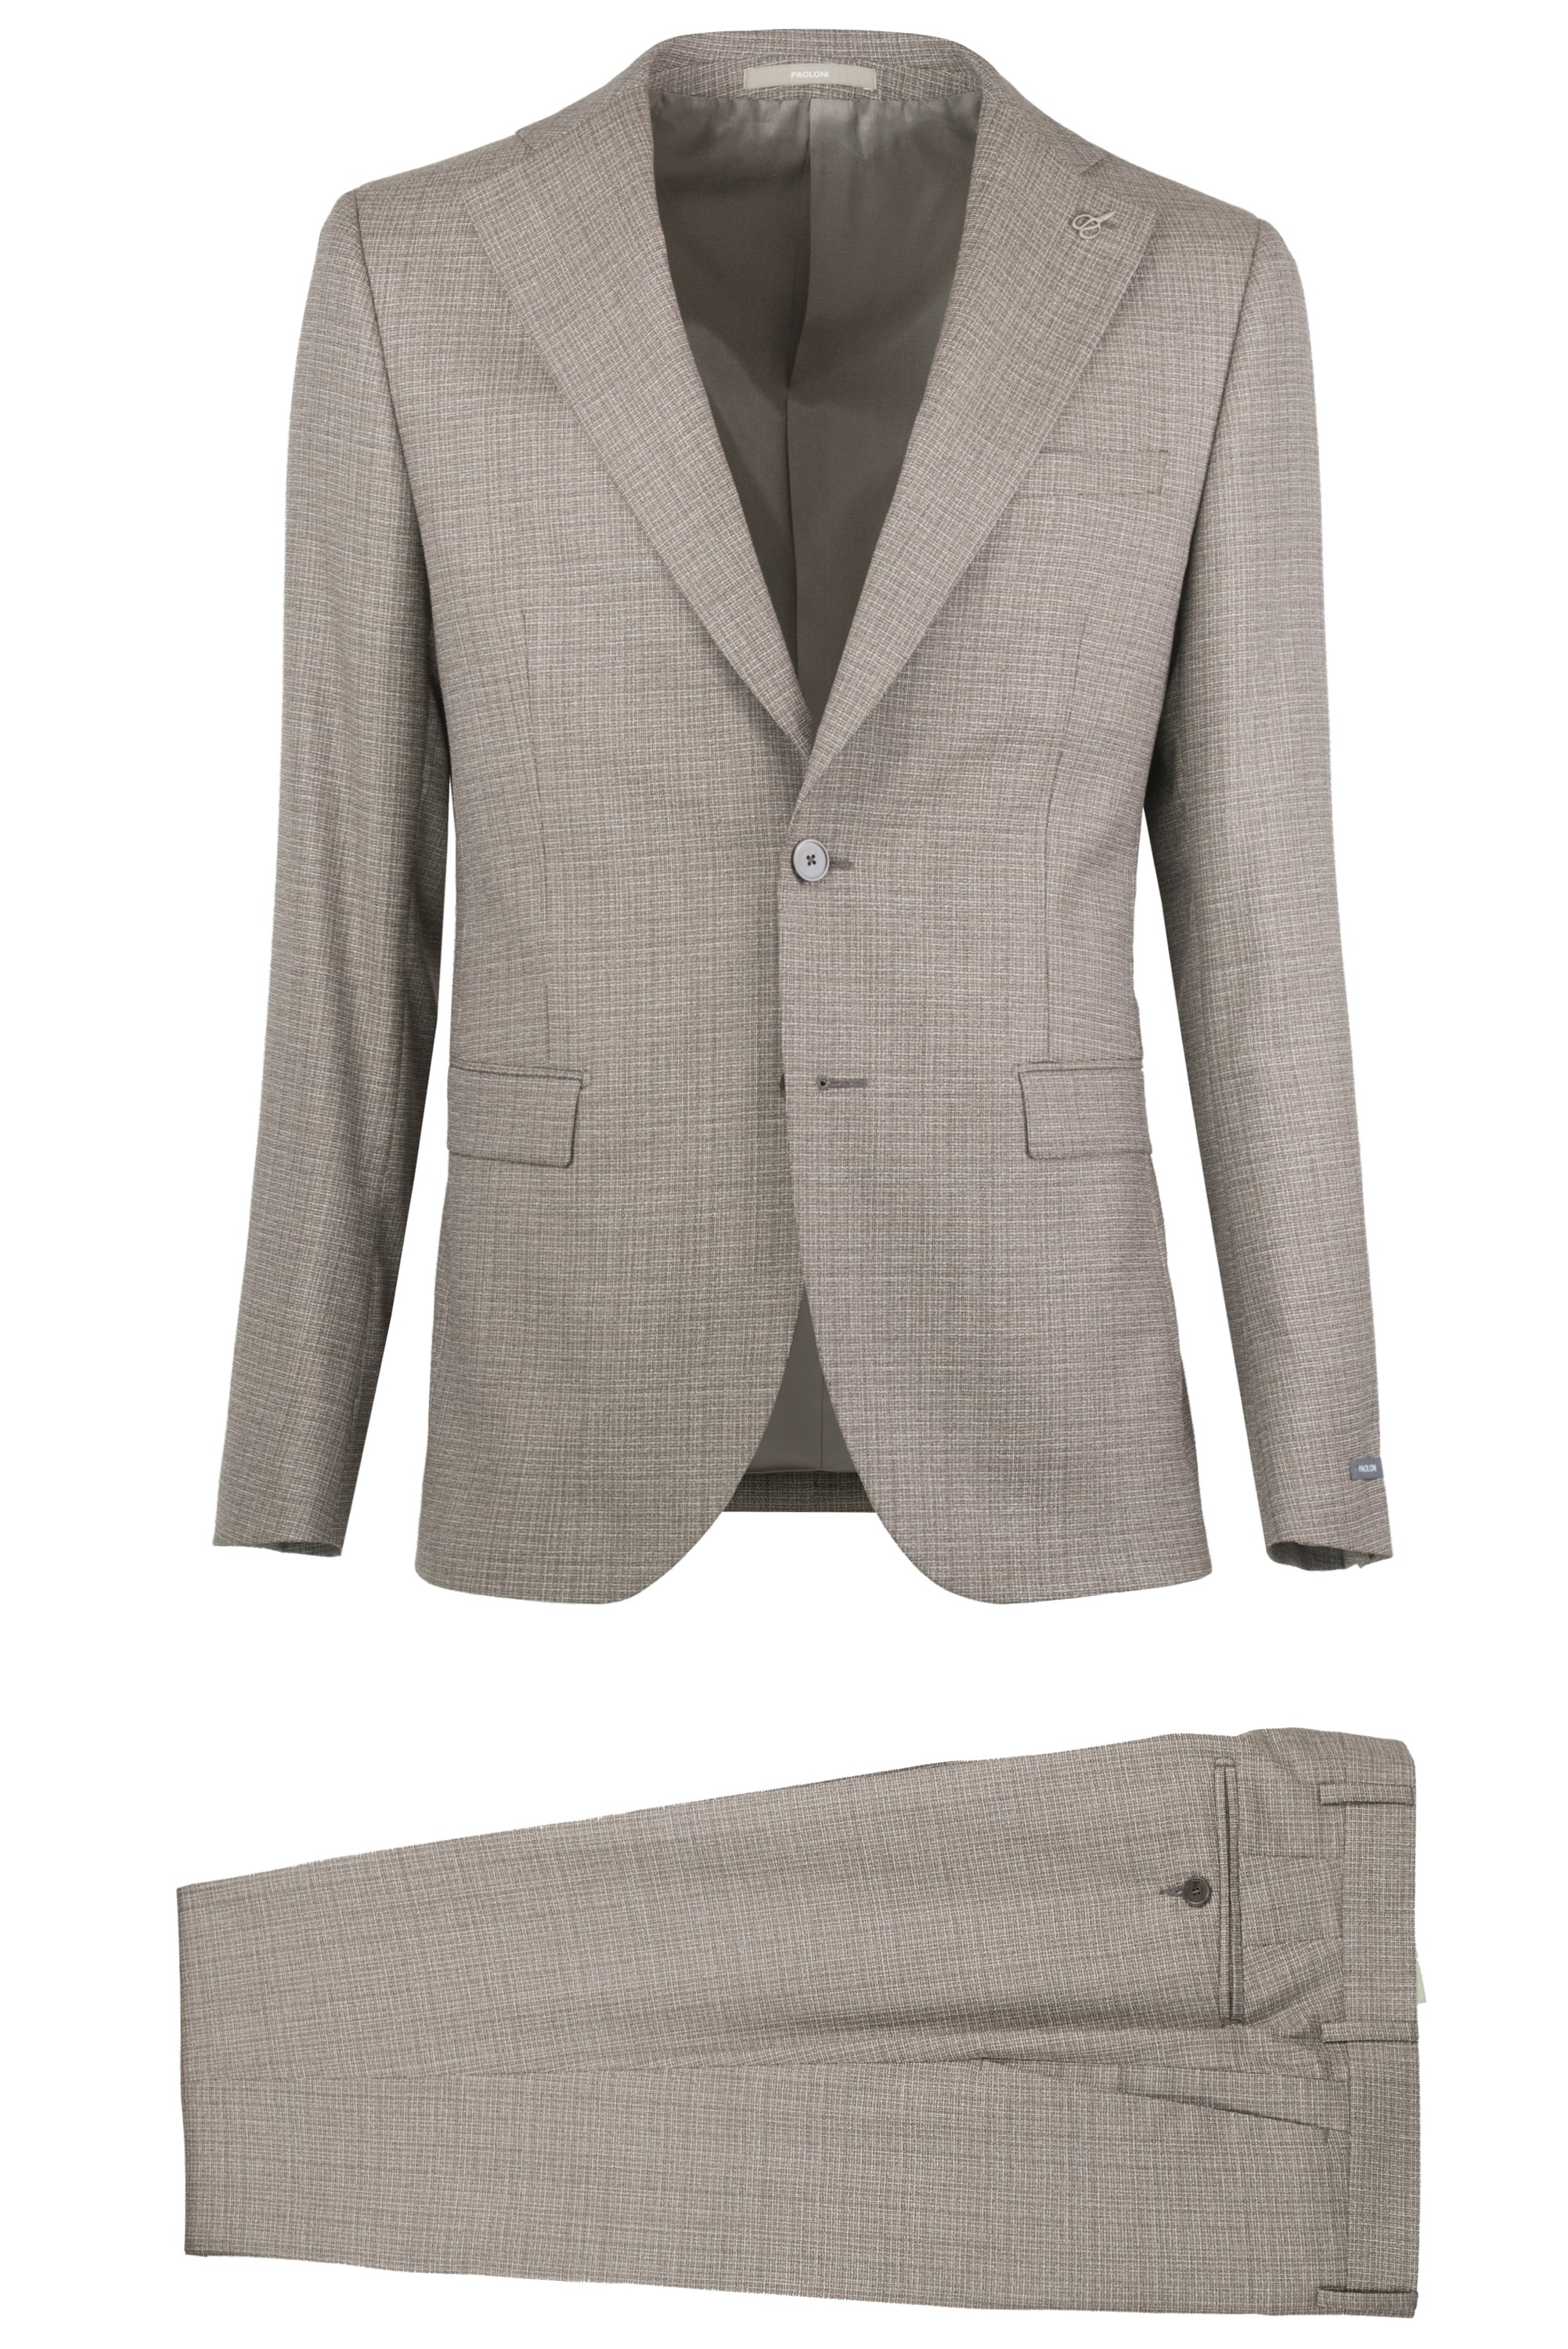 Paoloni Men's Suit 2811A448 201024 28